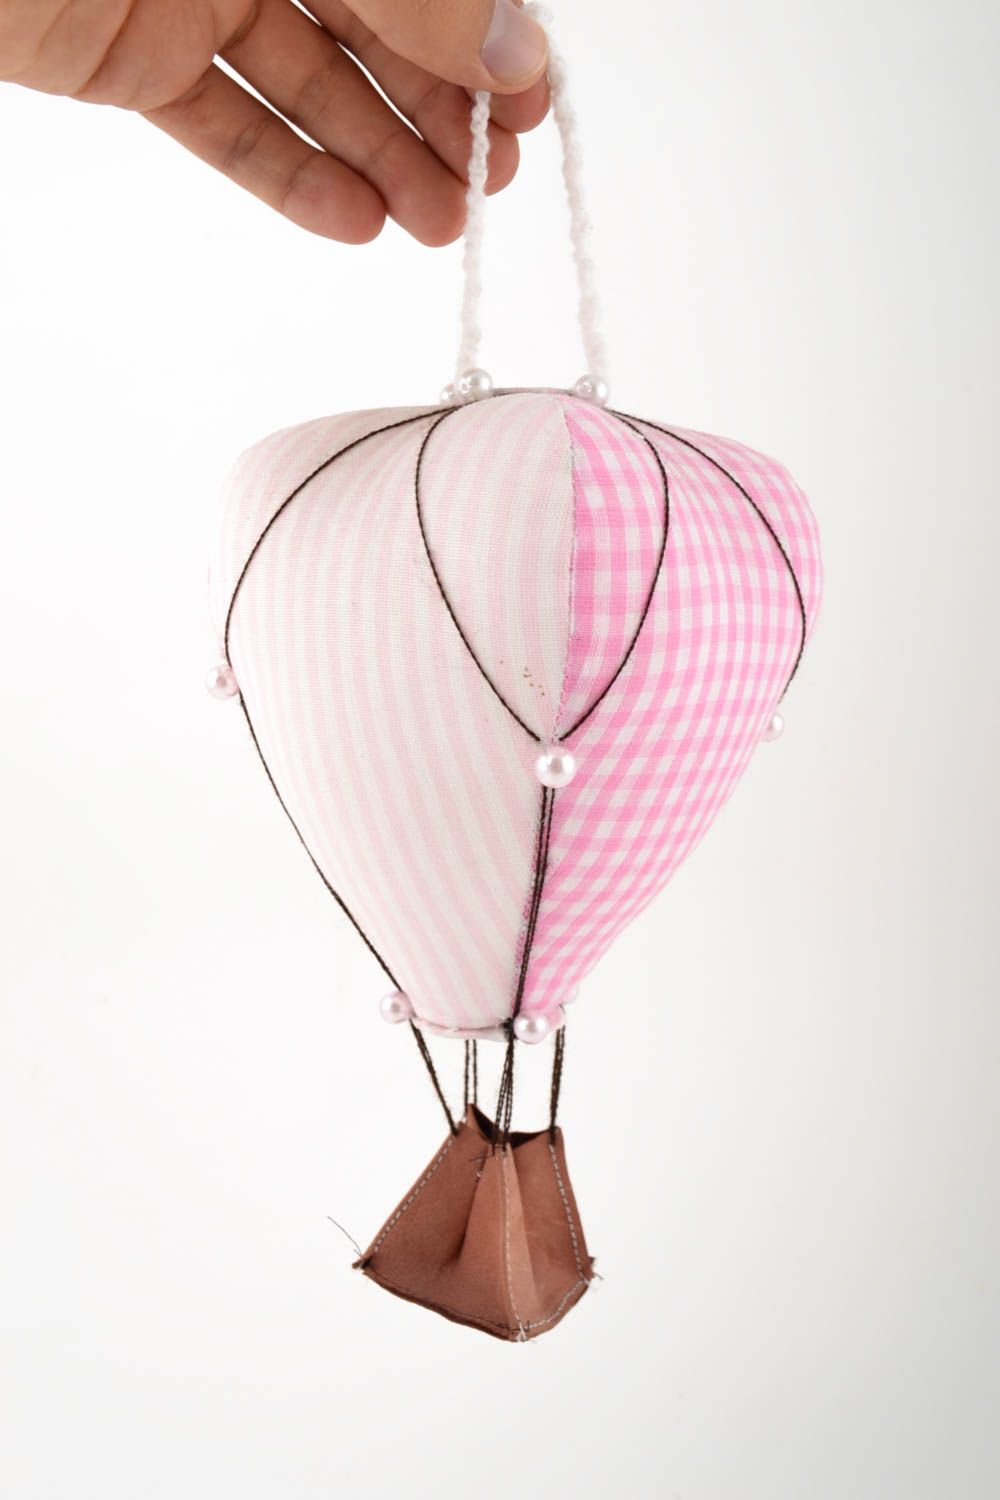 Textil Spielzeug handmade Deko Anhänger Stoff Kuscheltier Designer Geschenk rosa foto 3